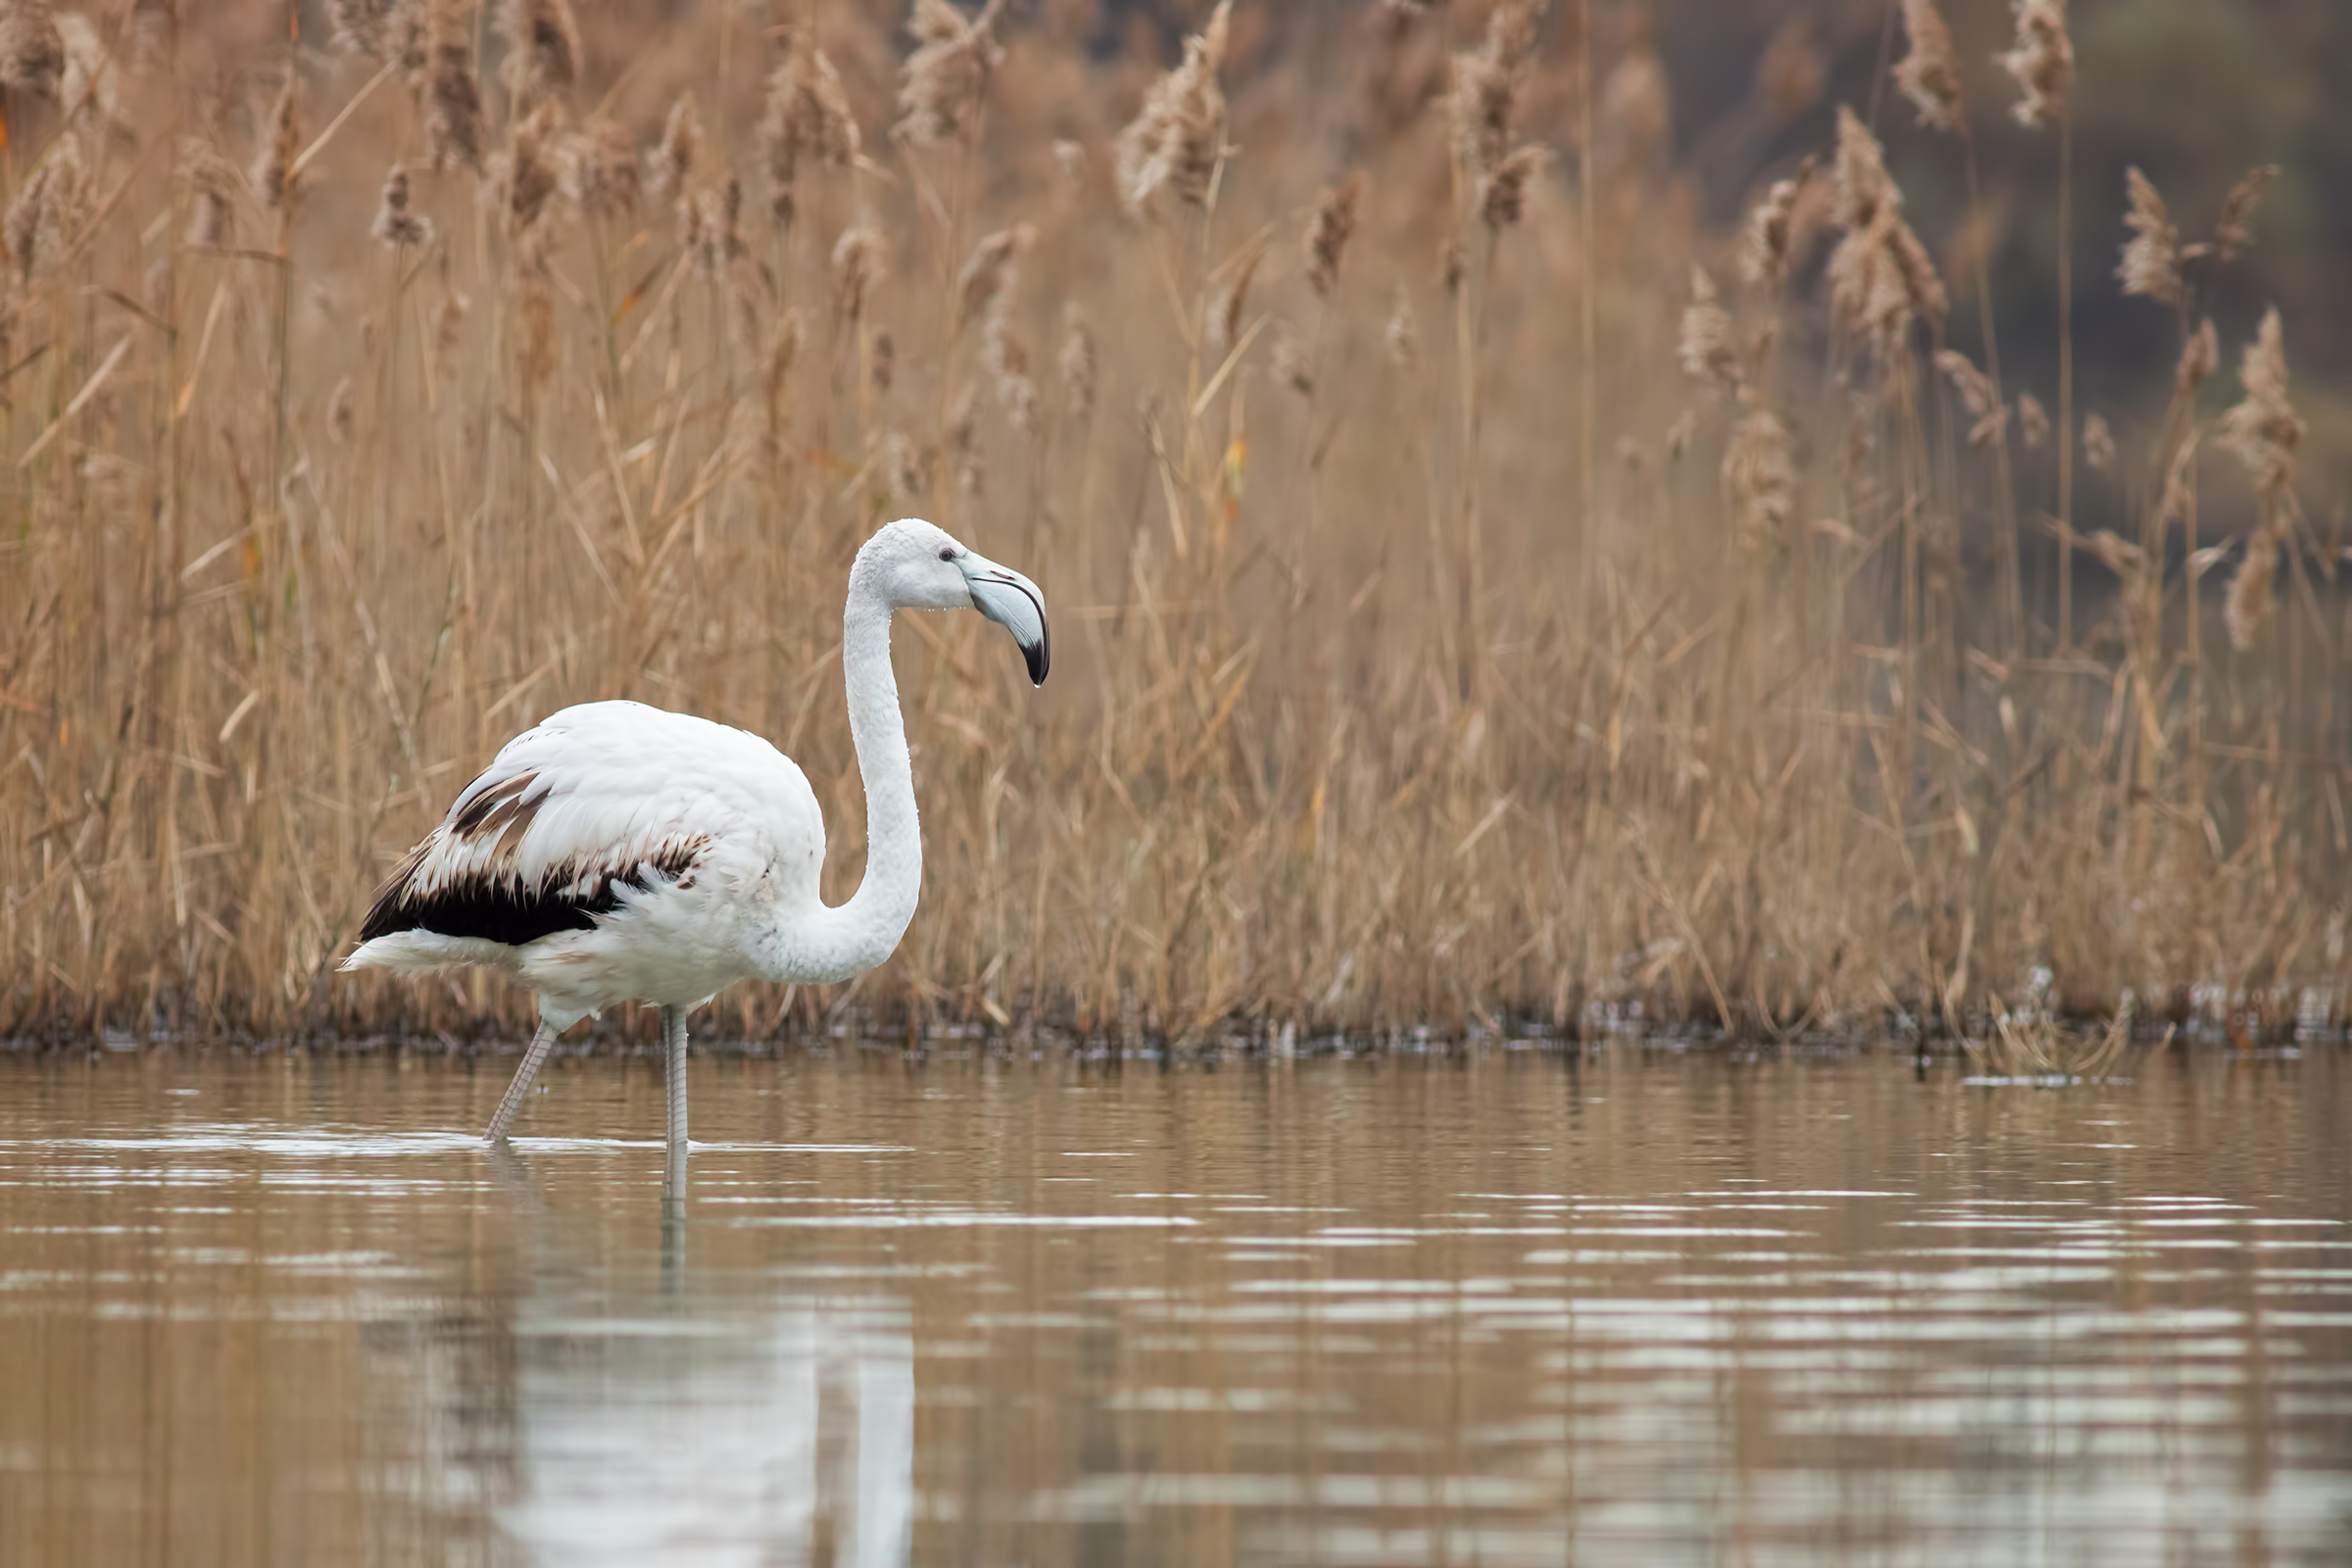 White flamingo among the reeds...